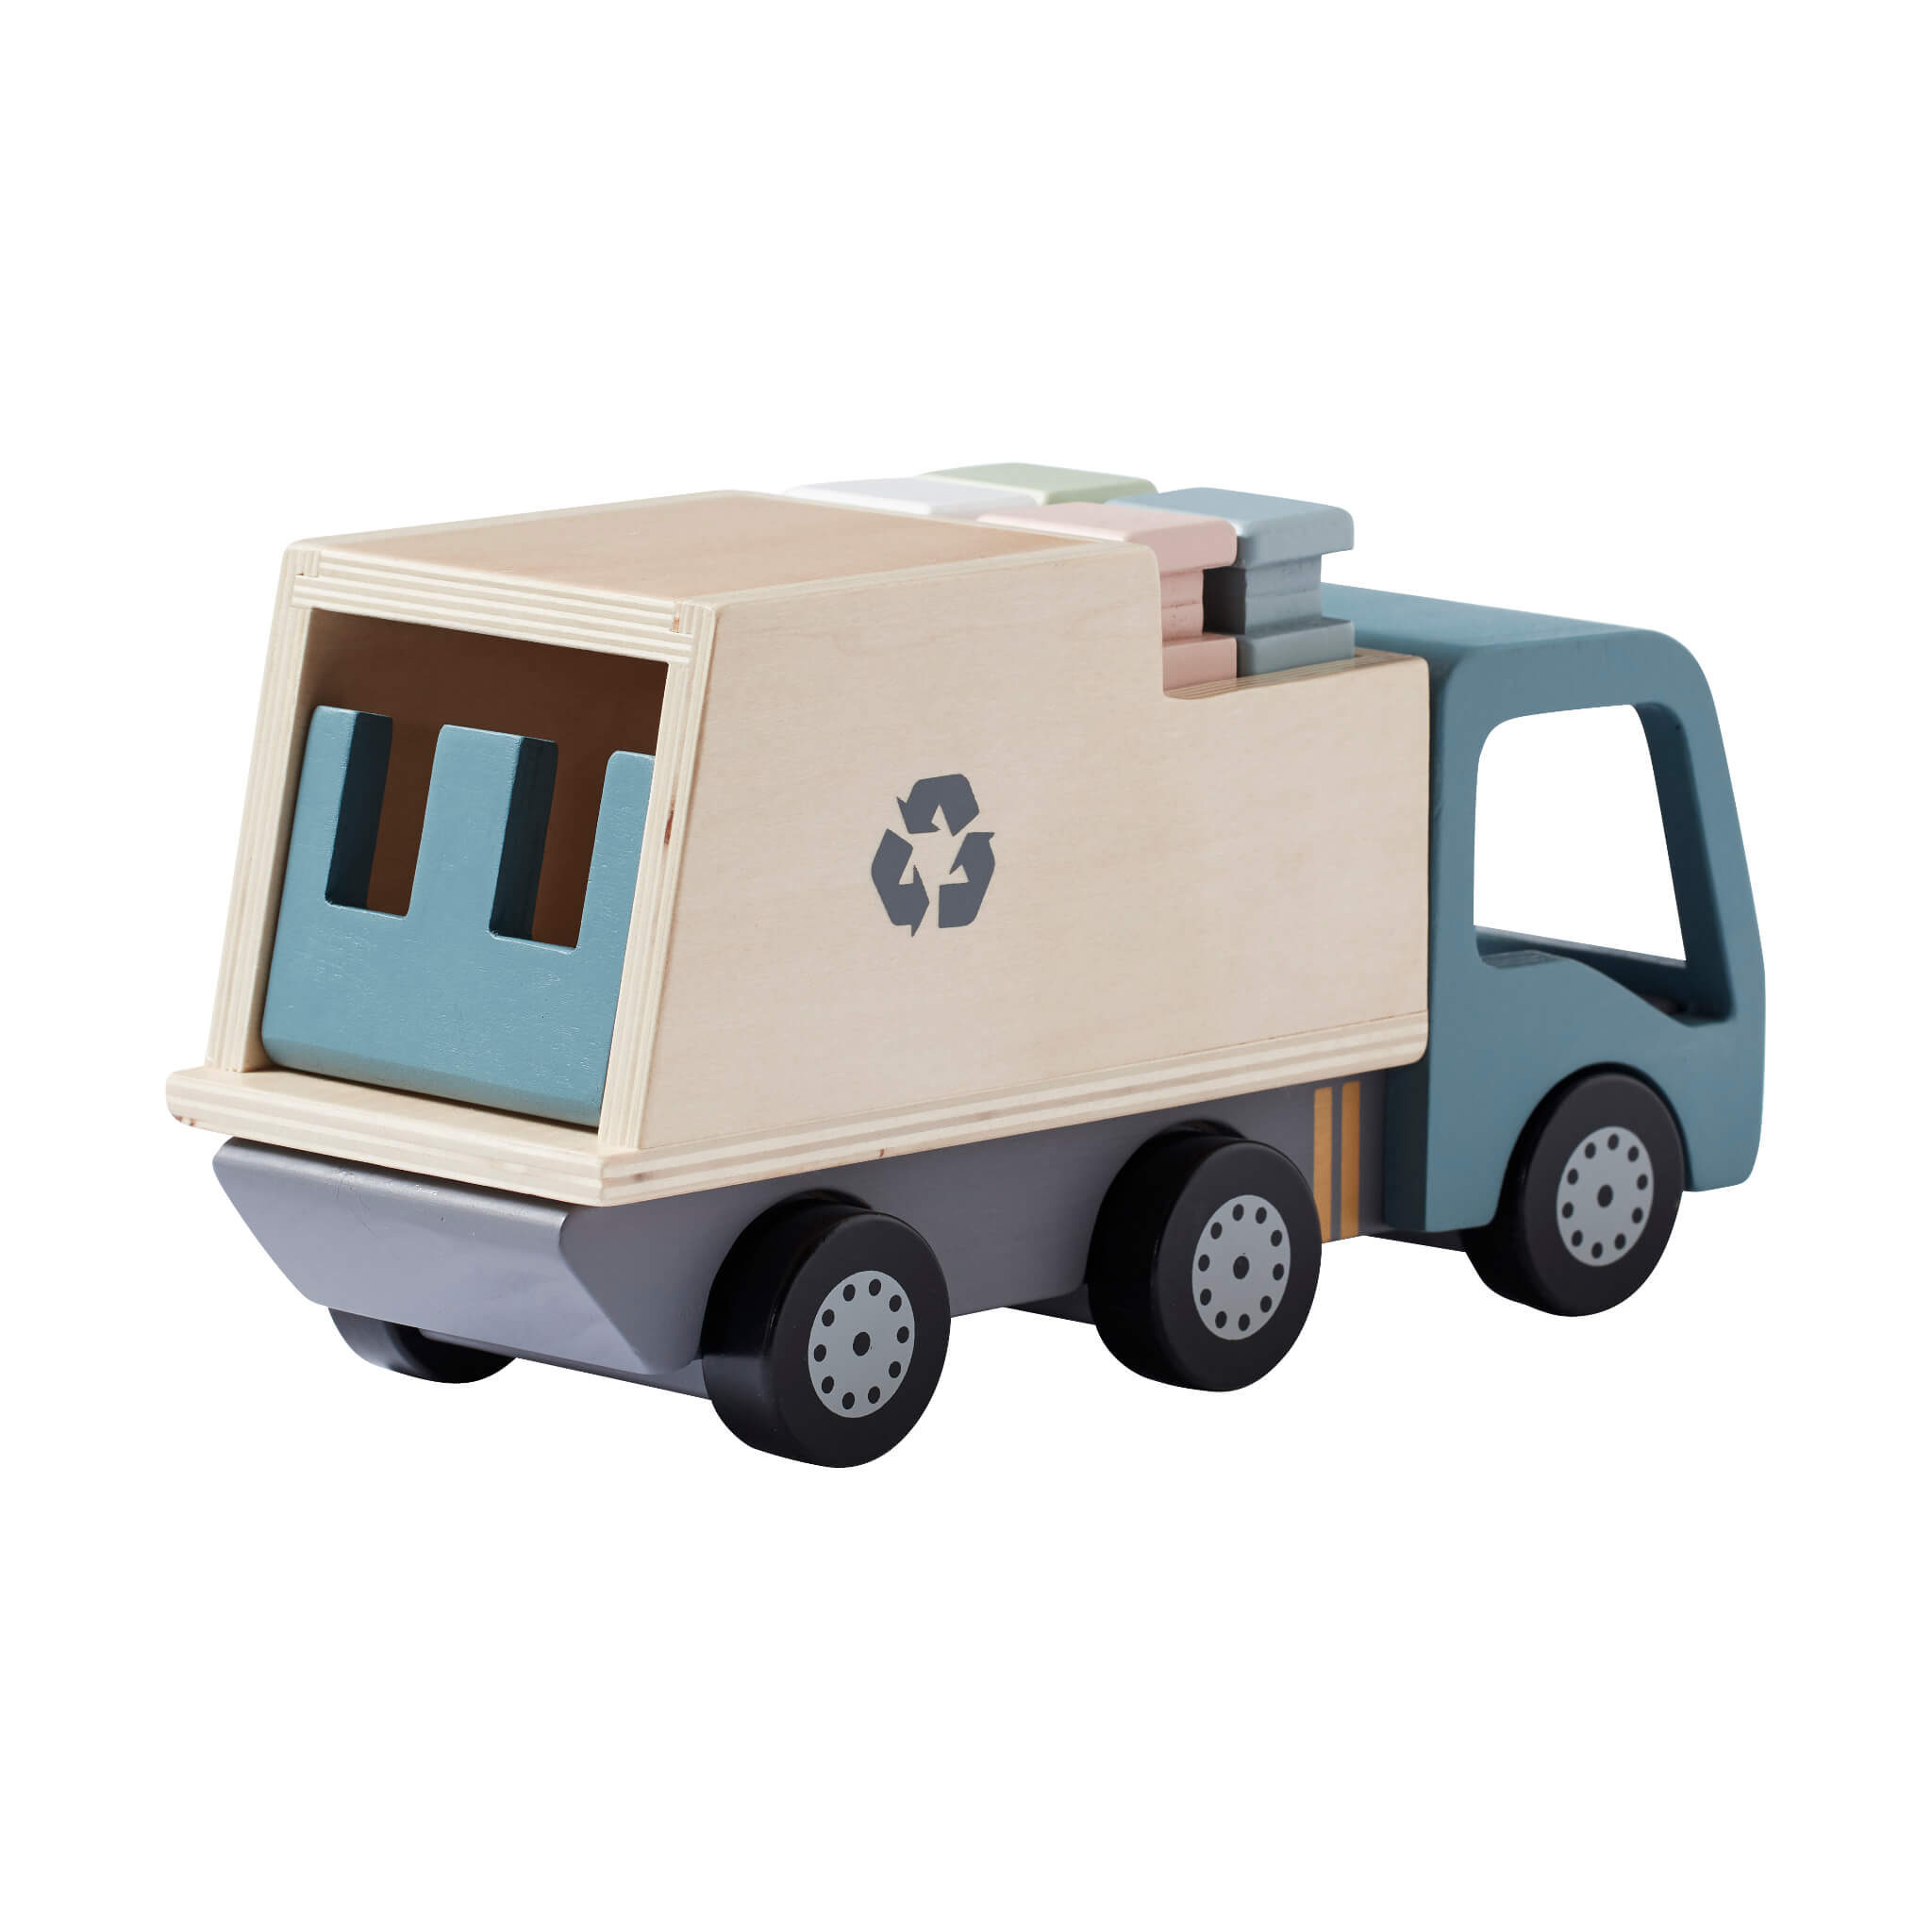 Kids Concept Wooden Aiden City Toy Garbage Truck